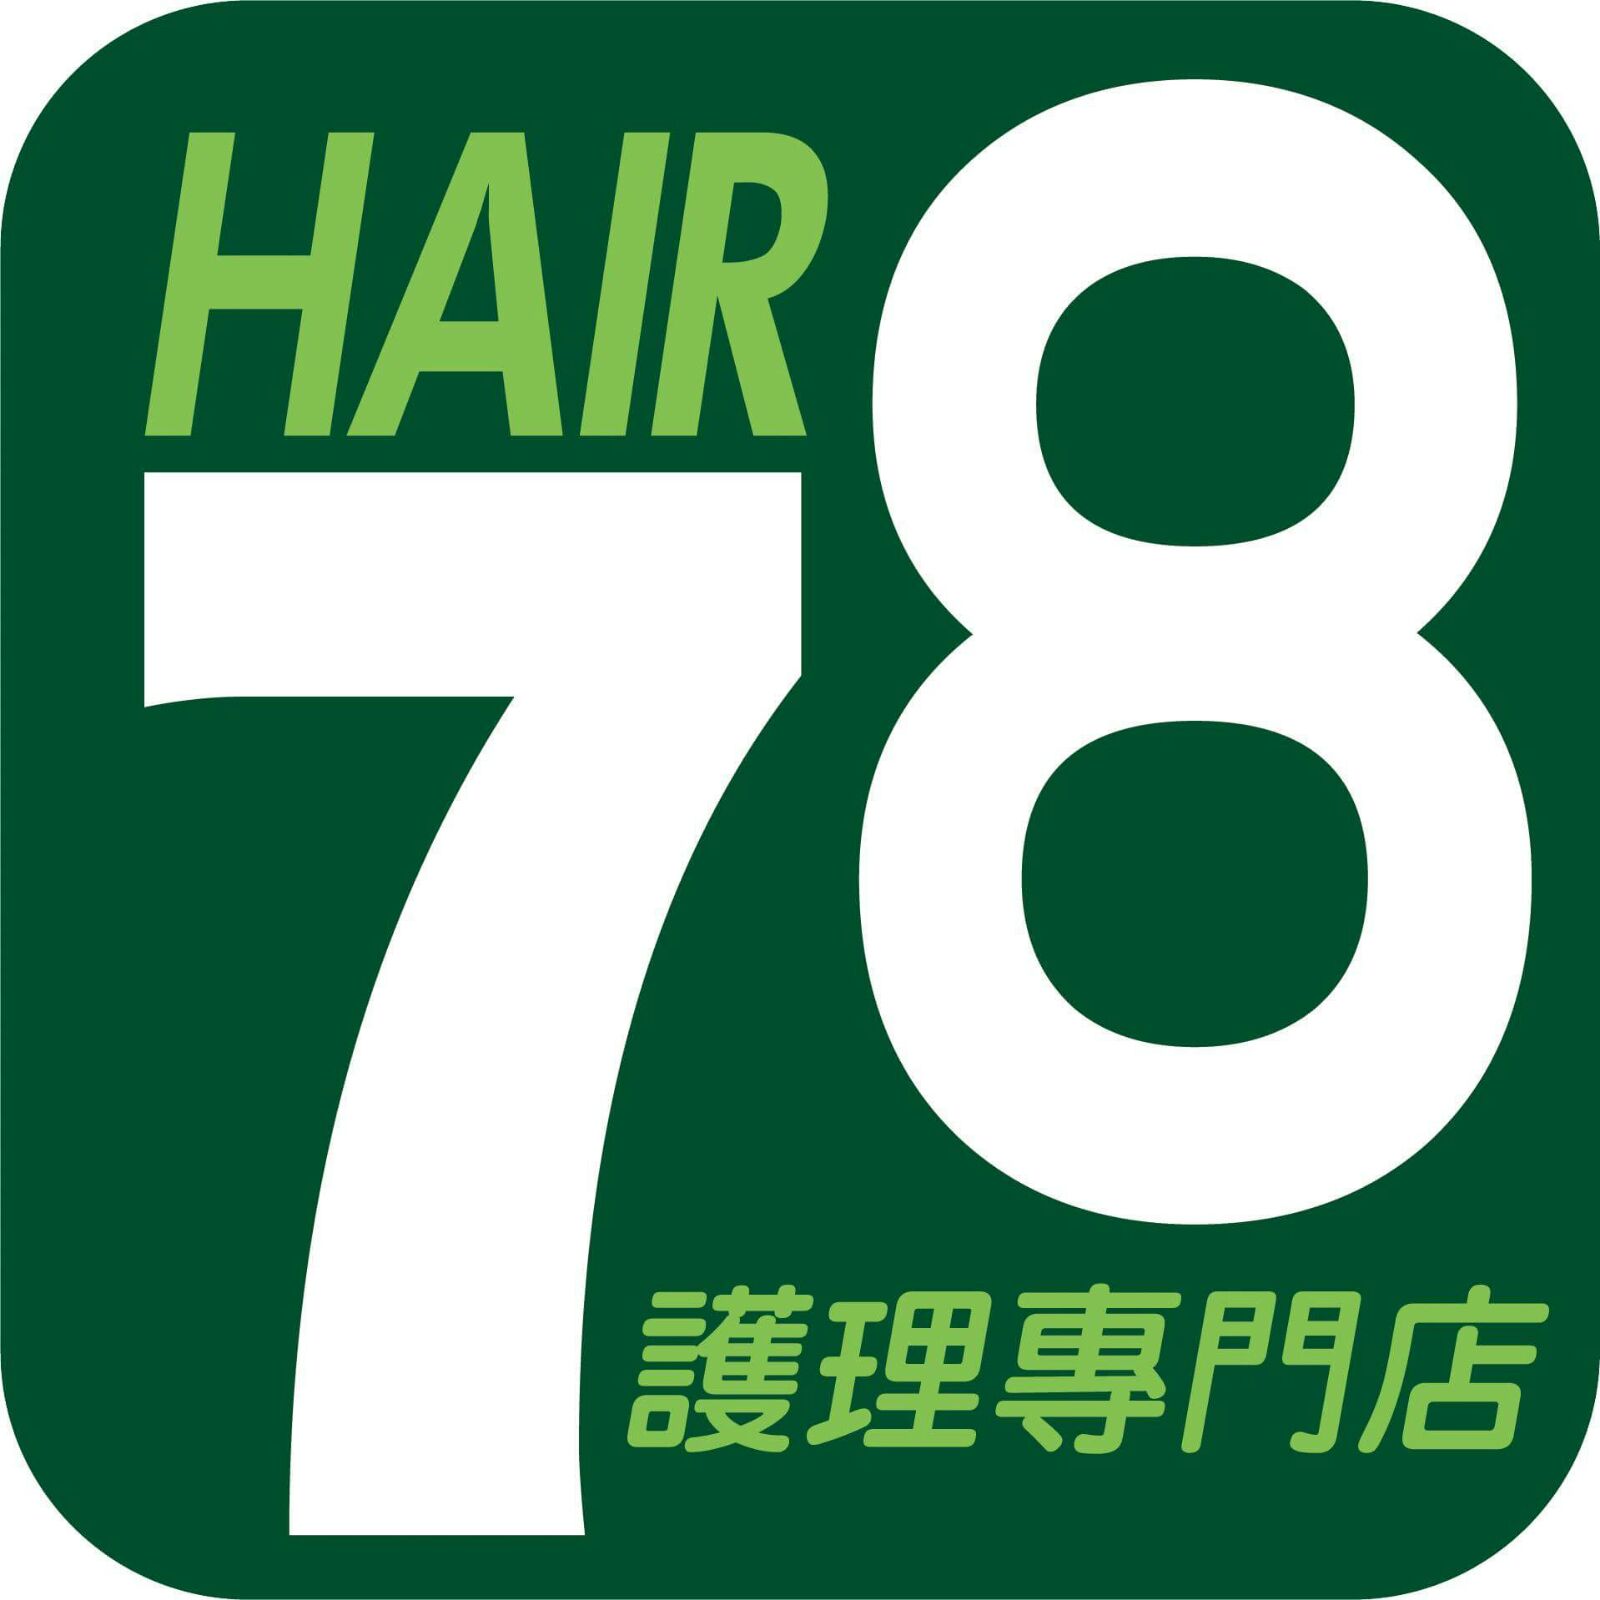 髮型屋: 78Hair護理專門店